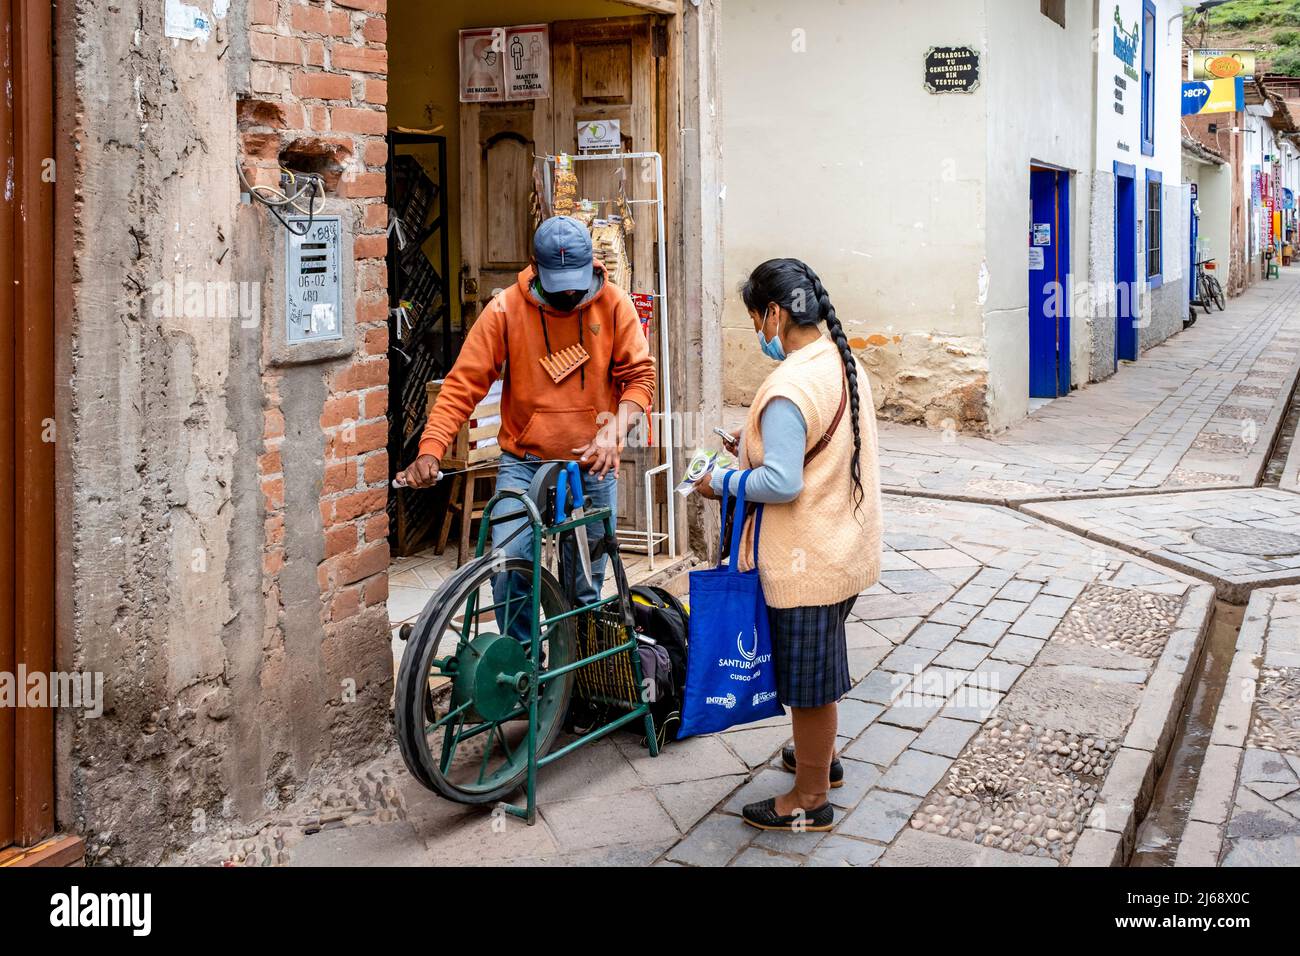 Un jeune homme aiguise des couteaux dans la rue à l'aide d'un ancien vélo aiguiseur de couteau, Pisac, la vallée sacrée, province de Calca, Pérou. Banque D'Images